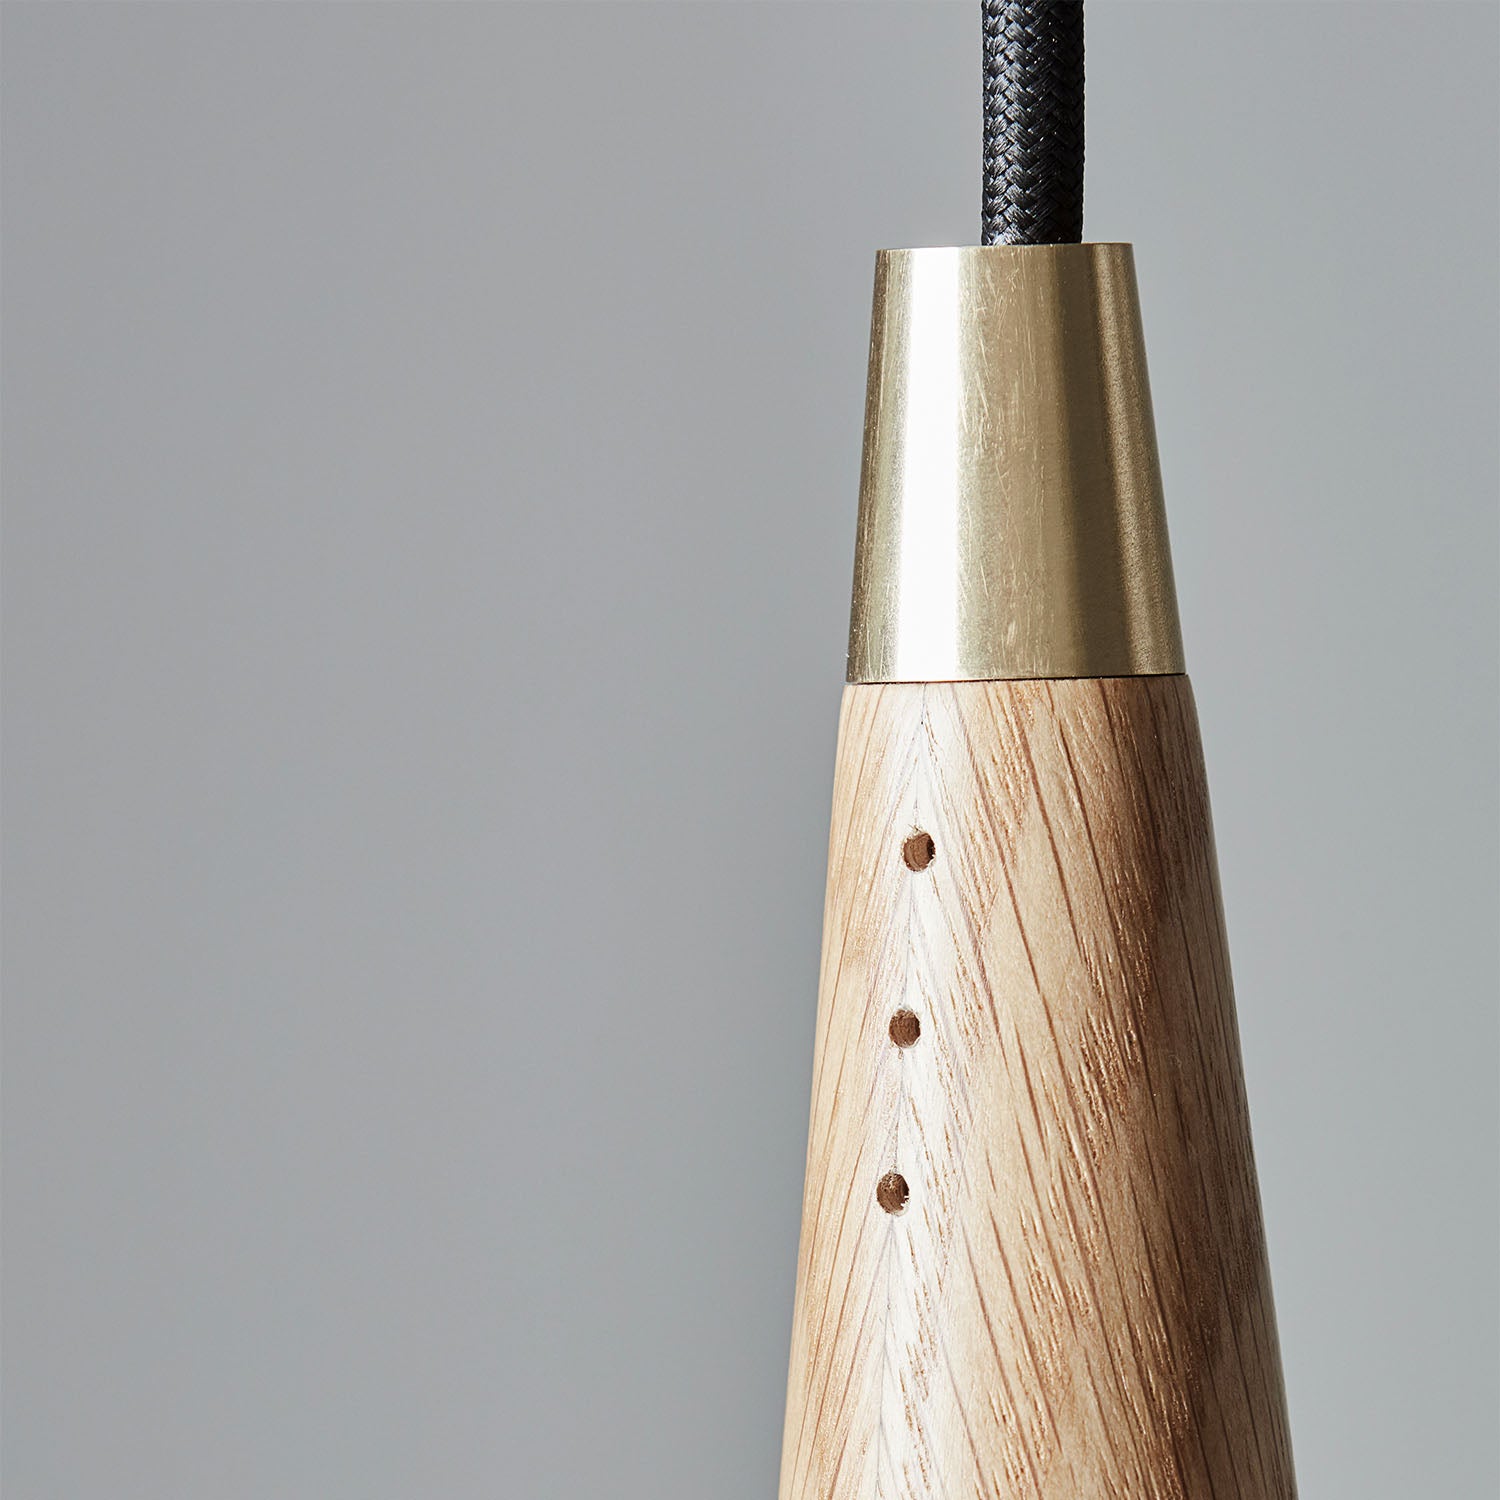 TOP 8 – Konische Pendelleuchte aus Holz, skandinavisches Design